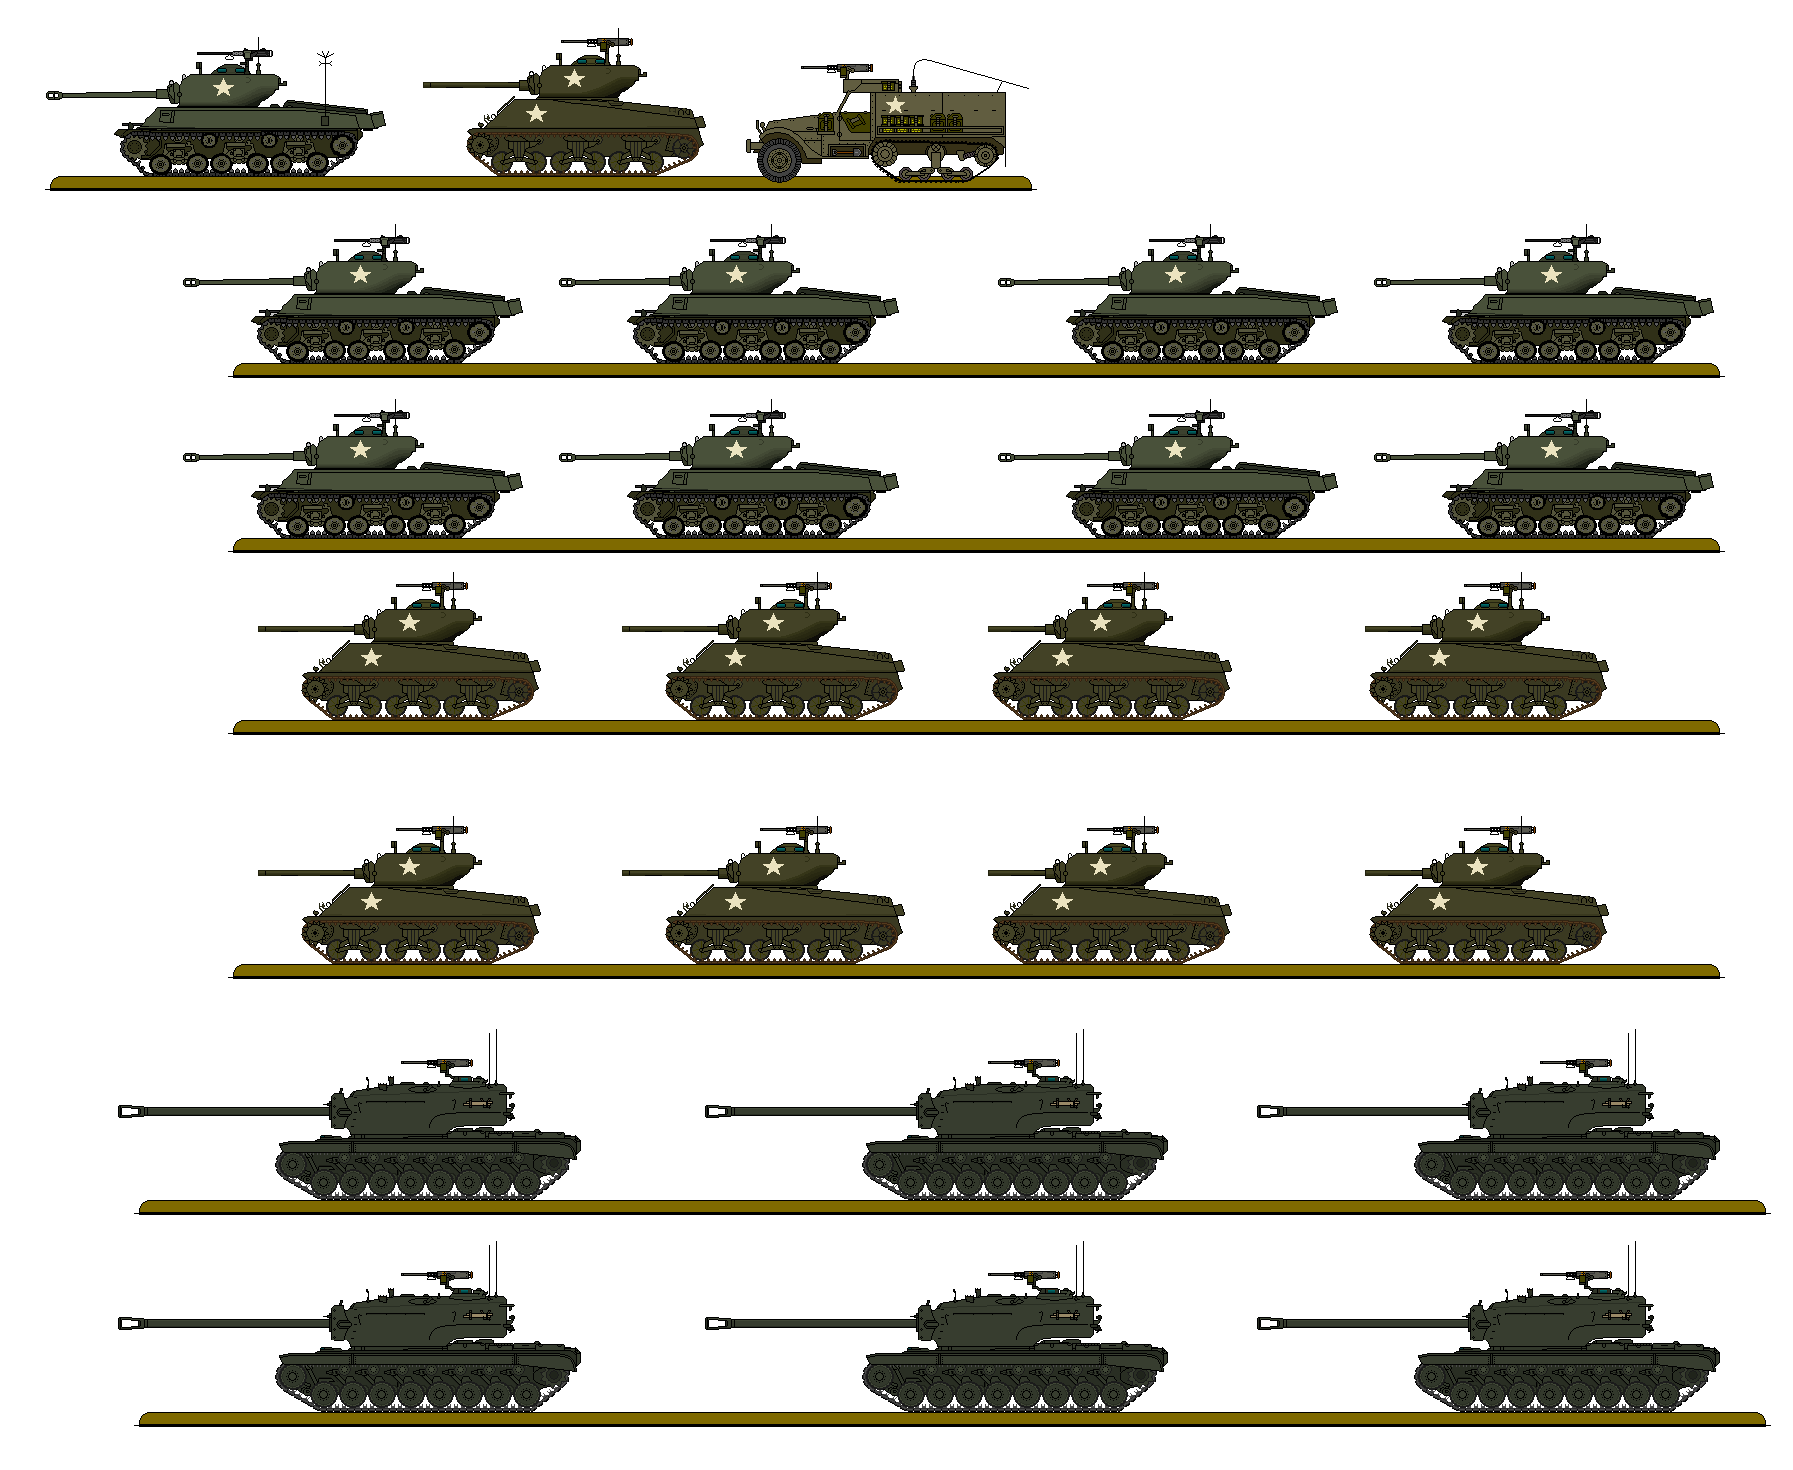 american tanks ww2